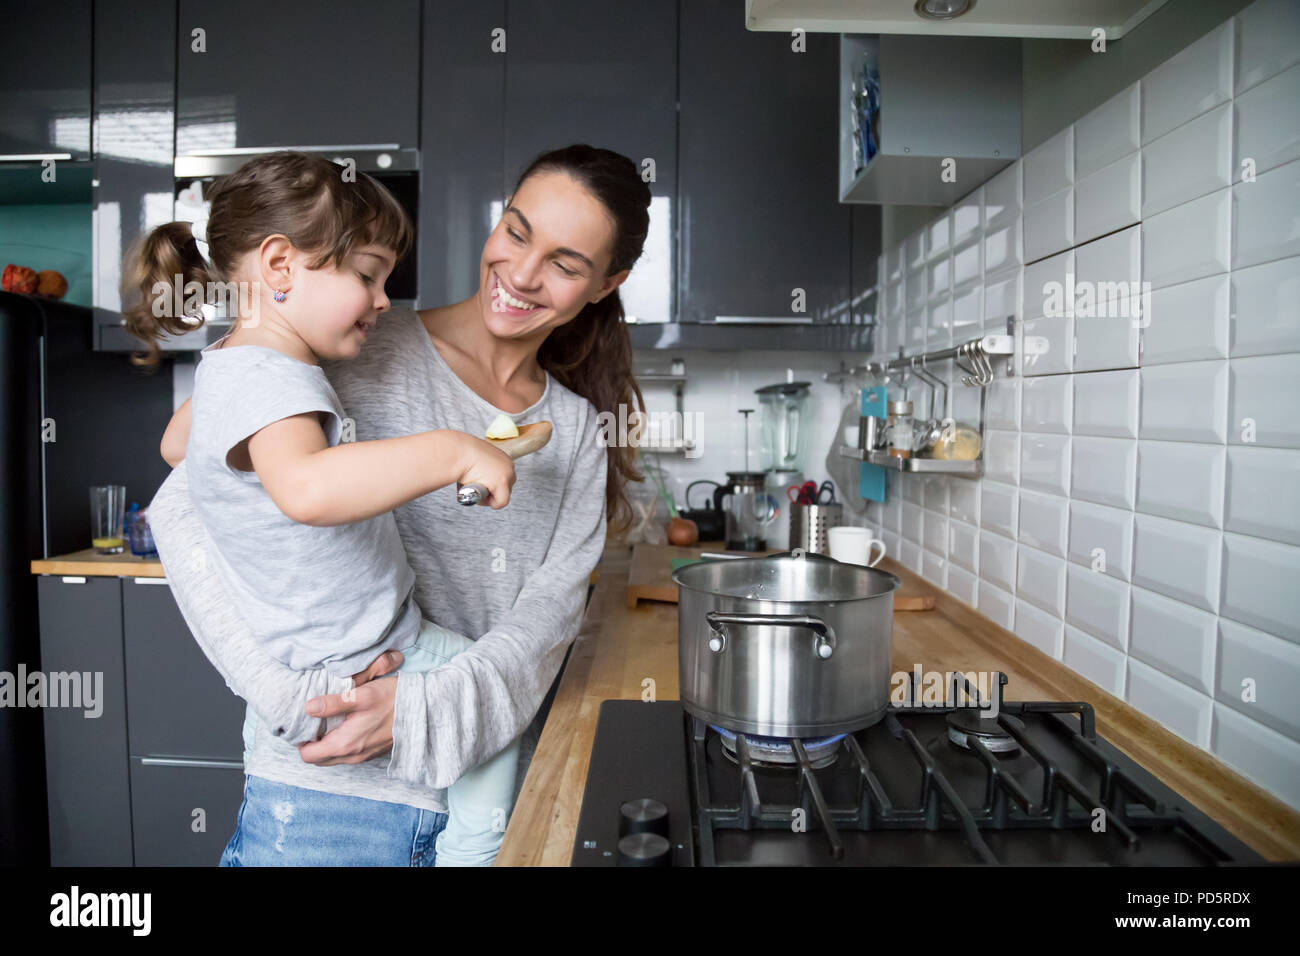 Lächelnde Mutter mit Kind Tochter neugierig über das Kochen in der Küche Stockfoto